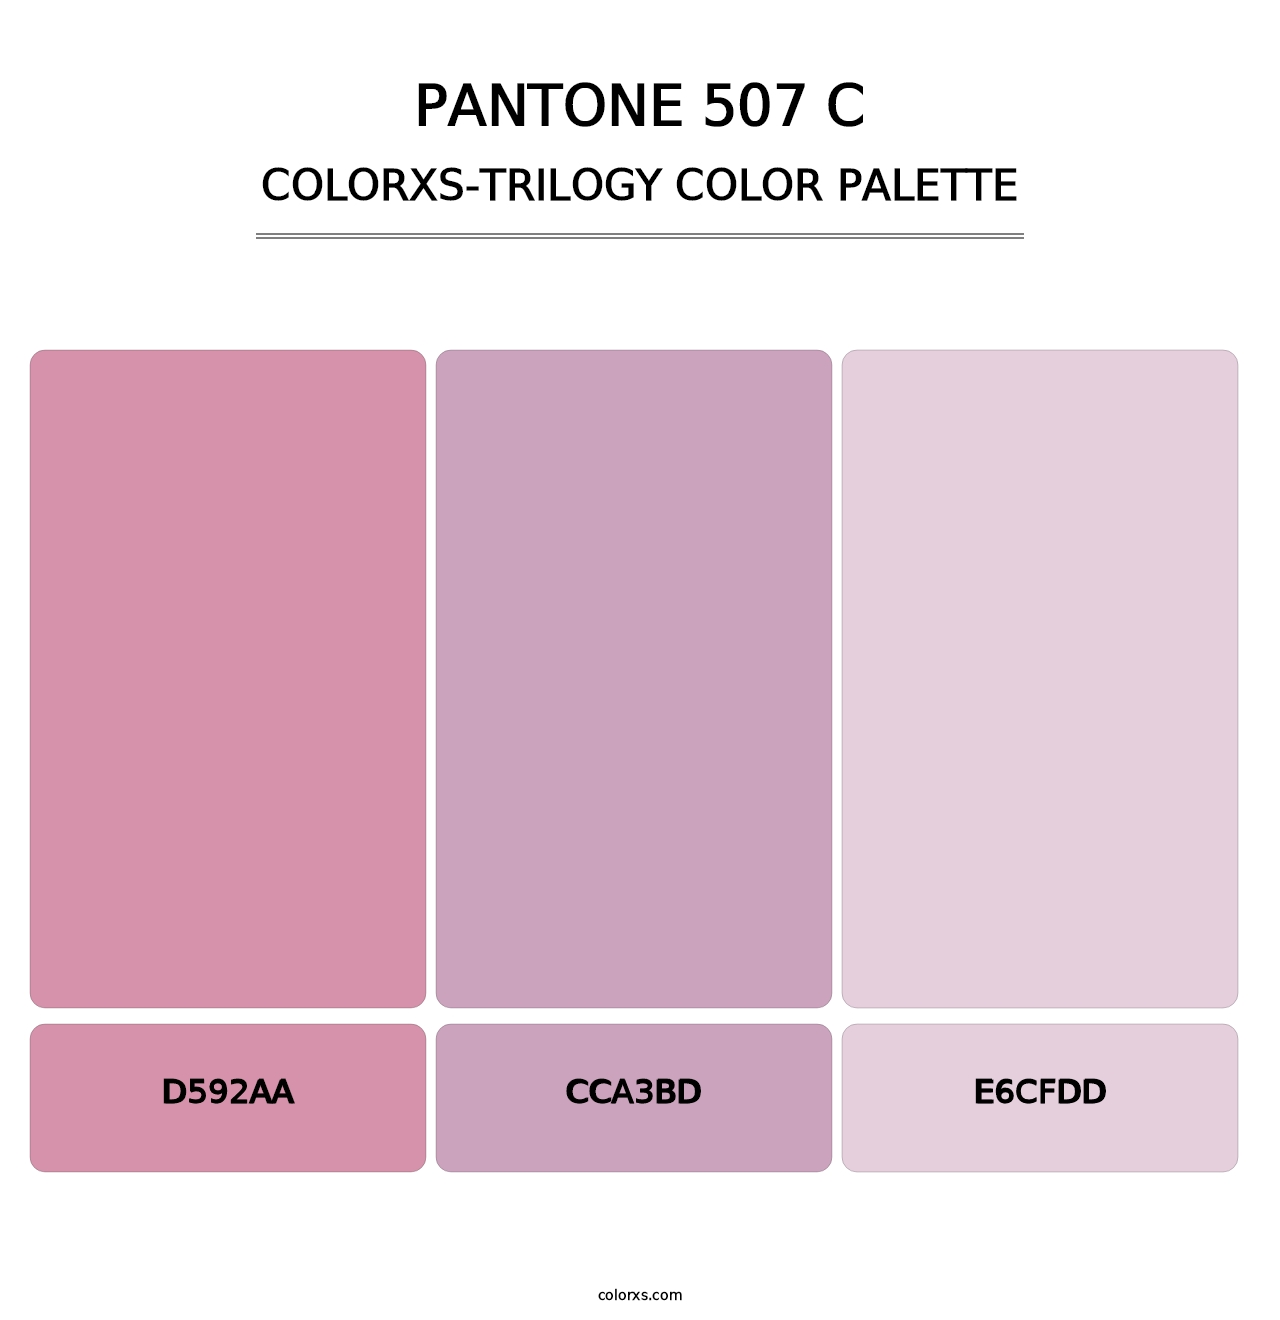 PANTONE 507 C - Colorxs Trilogy Palette